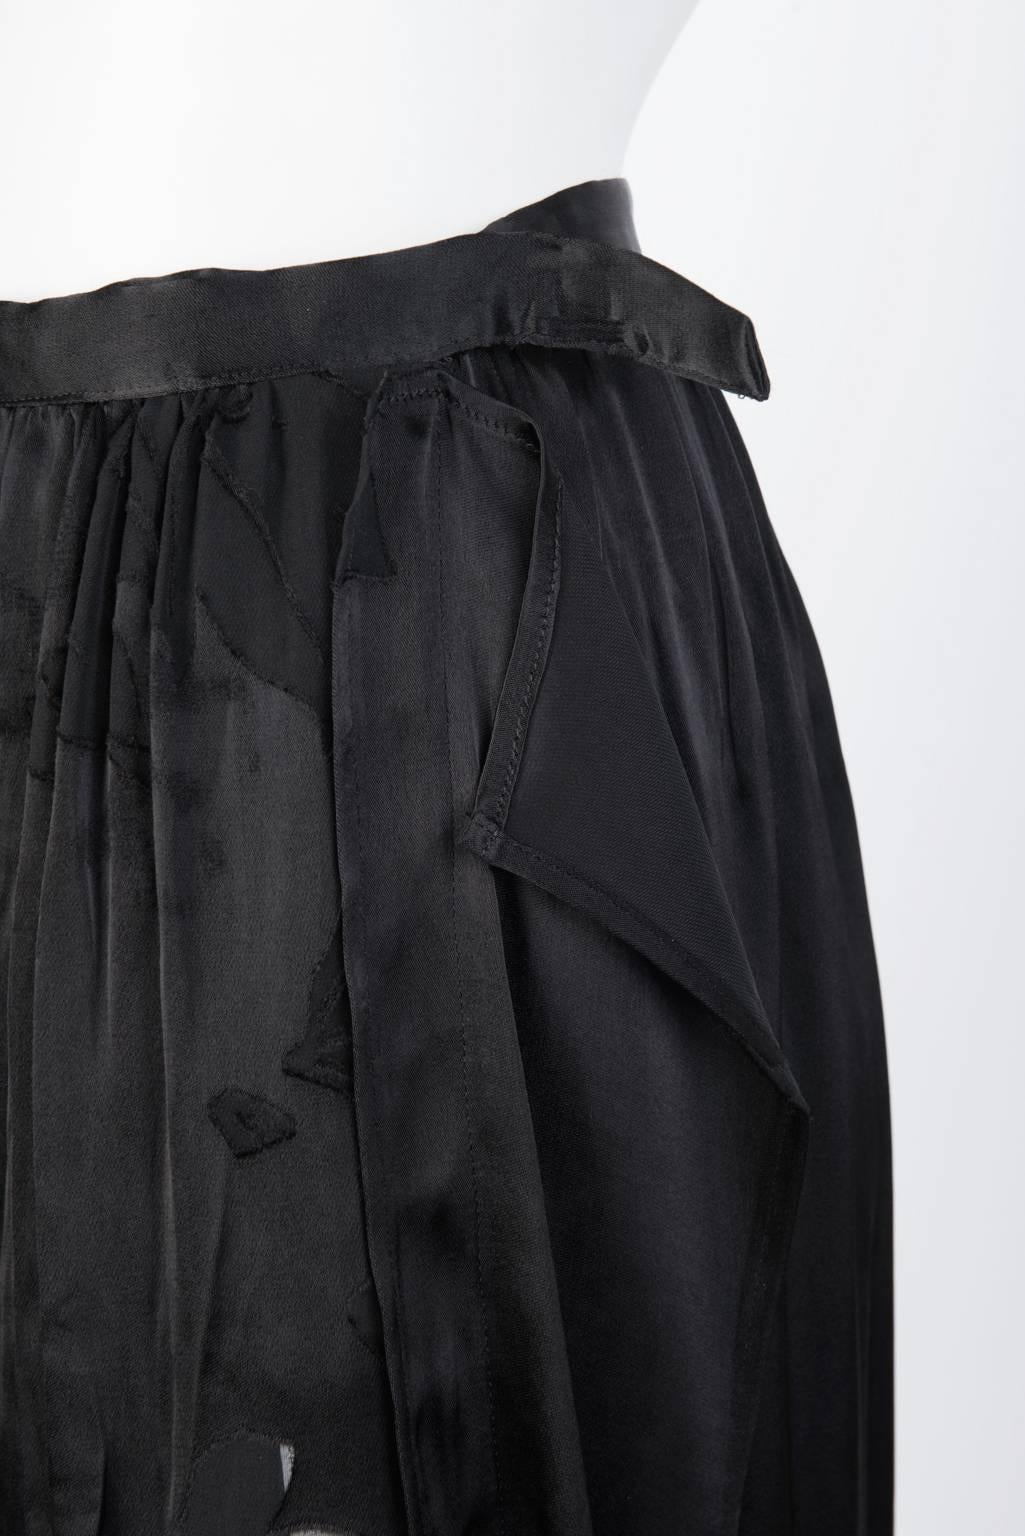 Women's 2016SS Yohji Yamamoto Silk Wrap Skirt For Sale